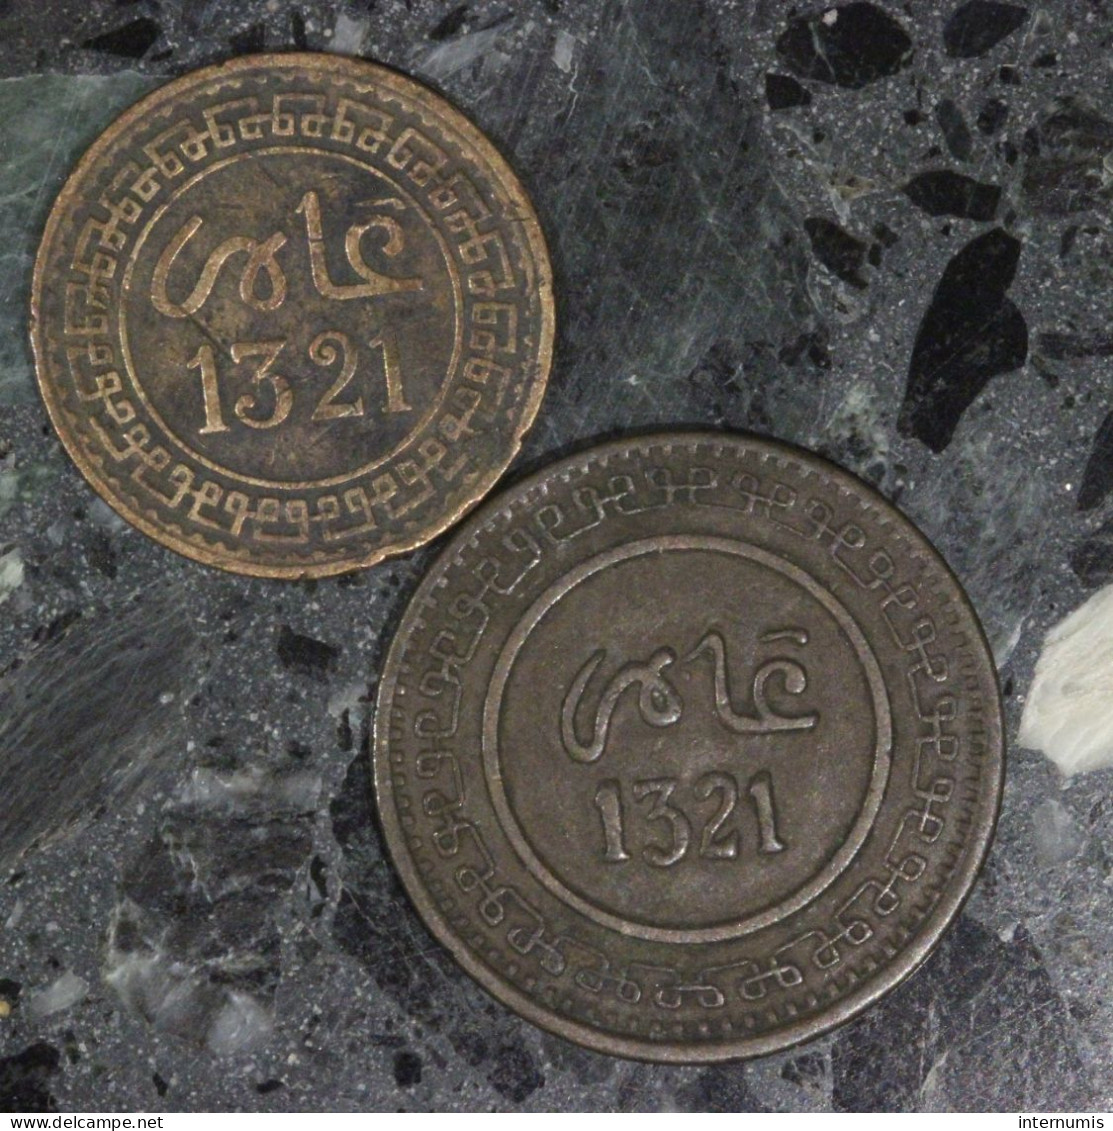 Maroc / Morocco LOT (2) : 5 & 10 Centimes, DATES : 1321 - Vrac - Monnaies